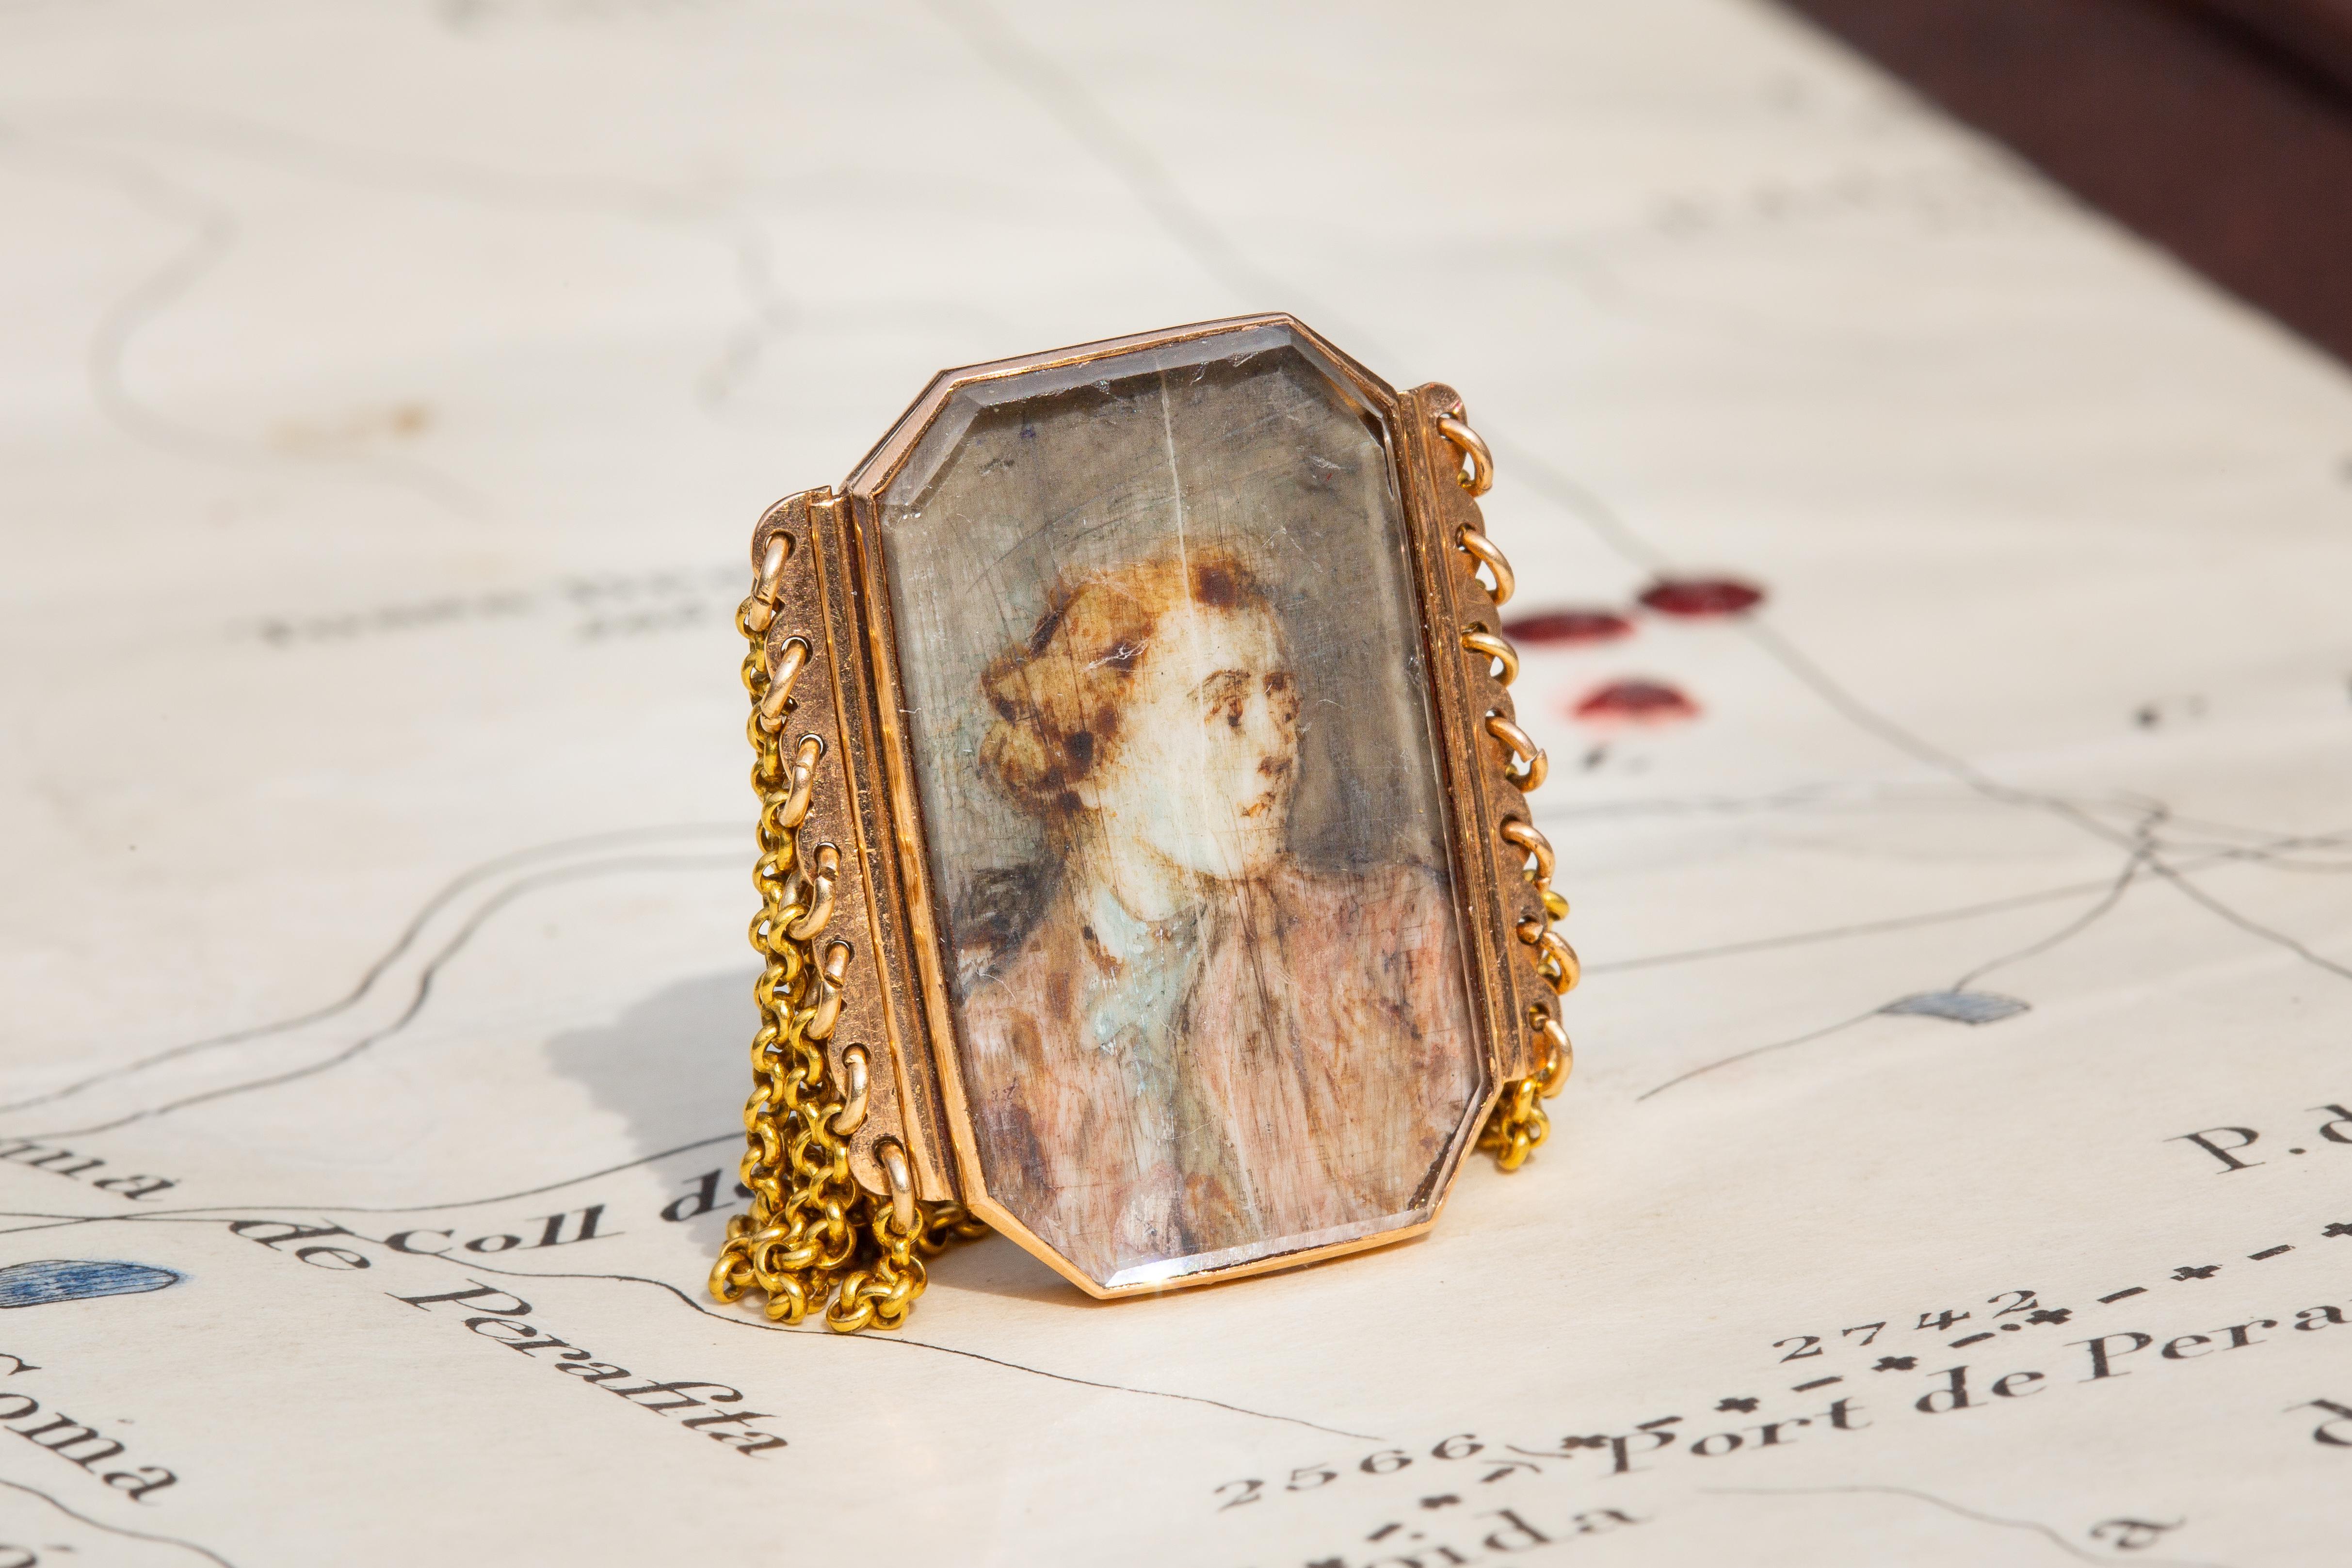 Cette bague en or antique très inhabituelle présente un portrait miniature français de la fin du XVIIIe siècle attaché à une chaîne à maillons multiples. 

Les bagues miniatures de Nature étaient, pour la plupart, de nature sentimentale, commandées